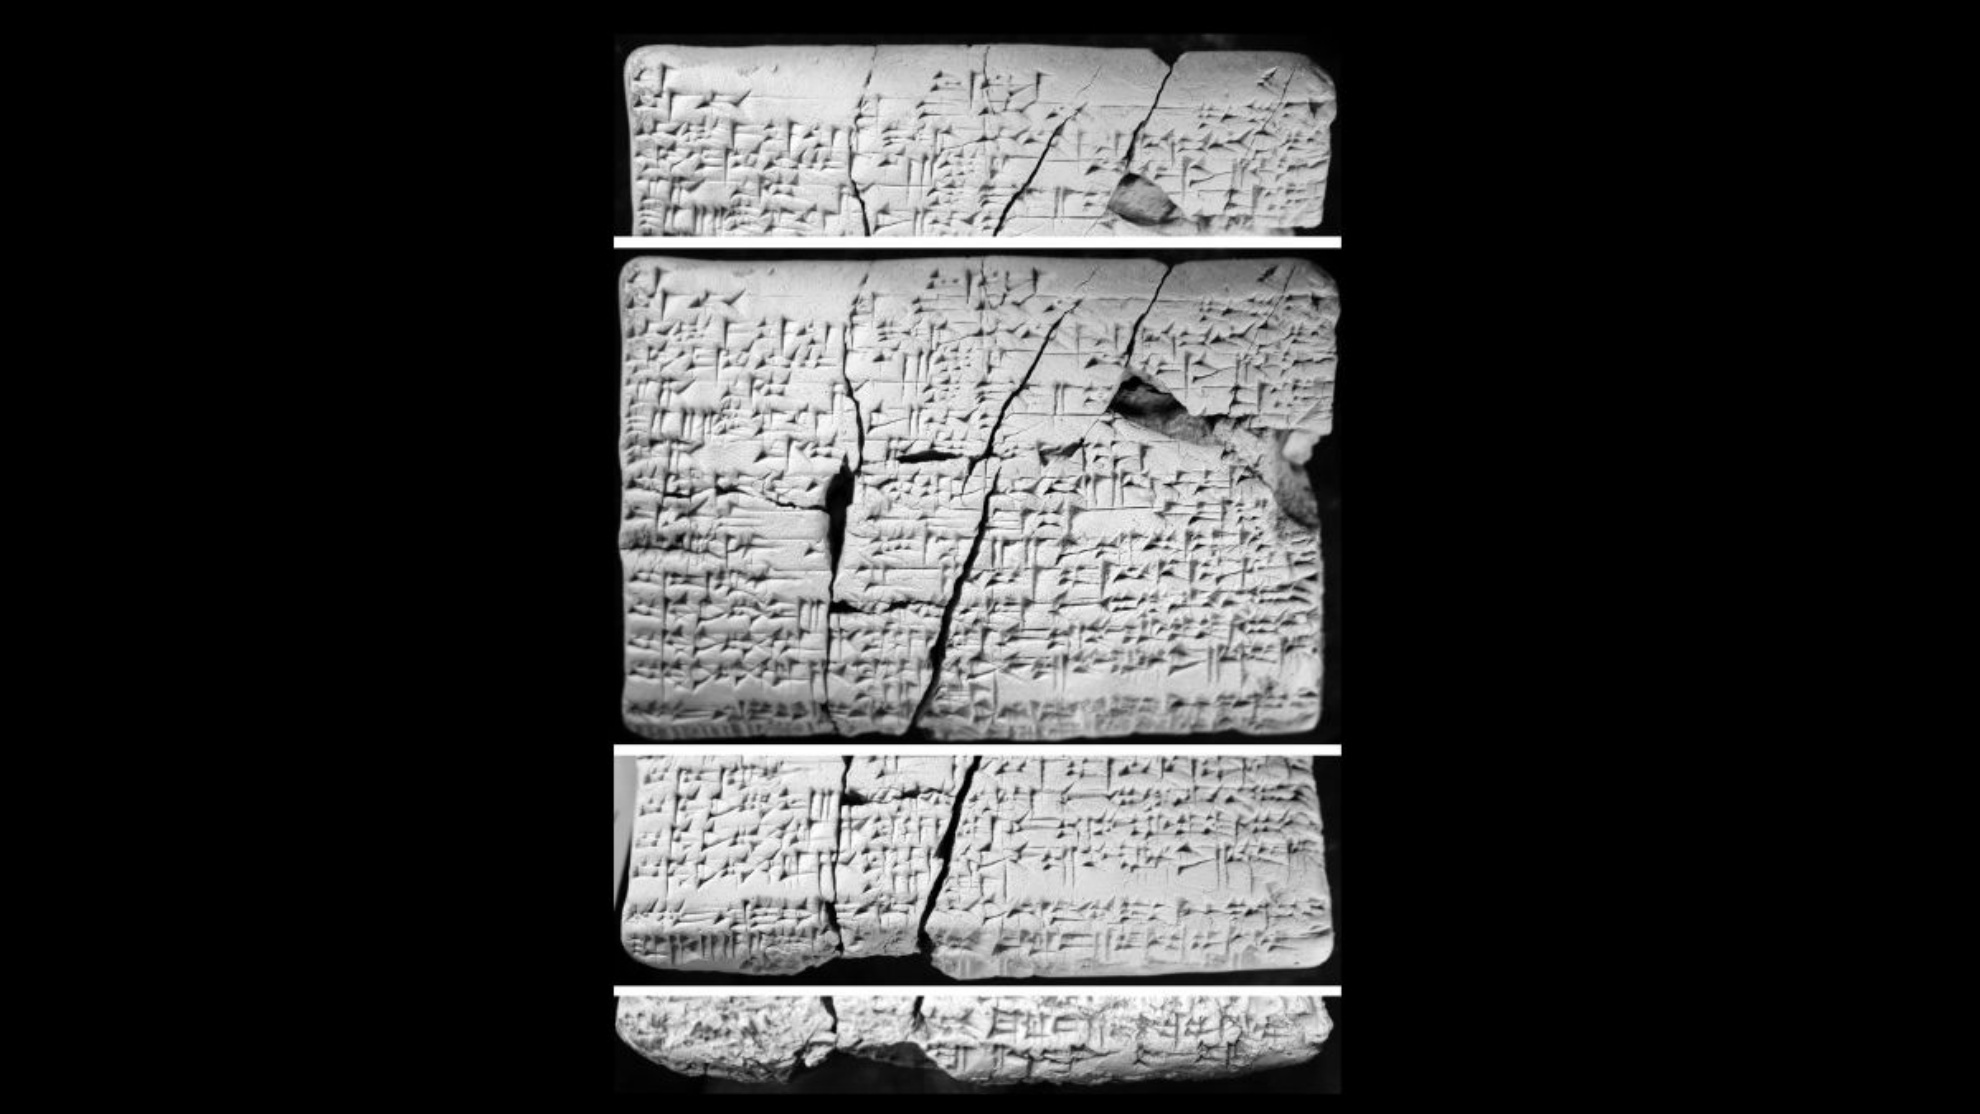 Tablet itu ditemui di Iraq kira-kira 30 tahun lalu. Ulama mula mengkajinya pada 2016 dan mendapati ia mengandungi butiran dalam bahasa Akkadia tentang bahasa Amori yang "hilang".